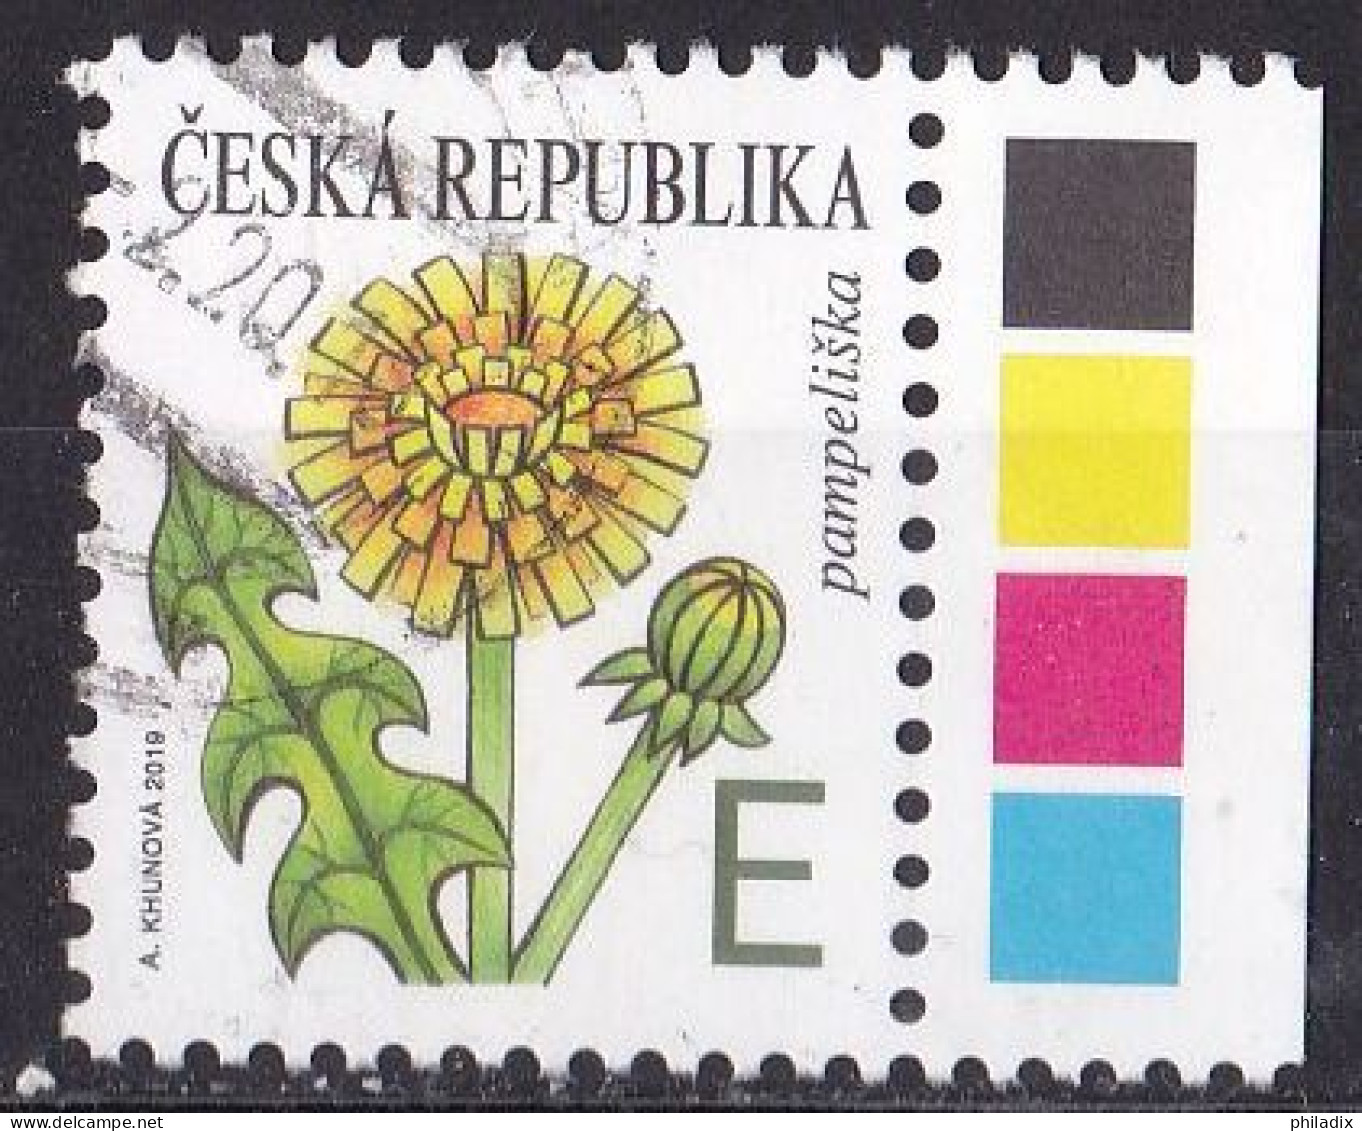 # Tschechische Republik Marke Von 2019 O/used (A5-4) - Usati